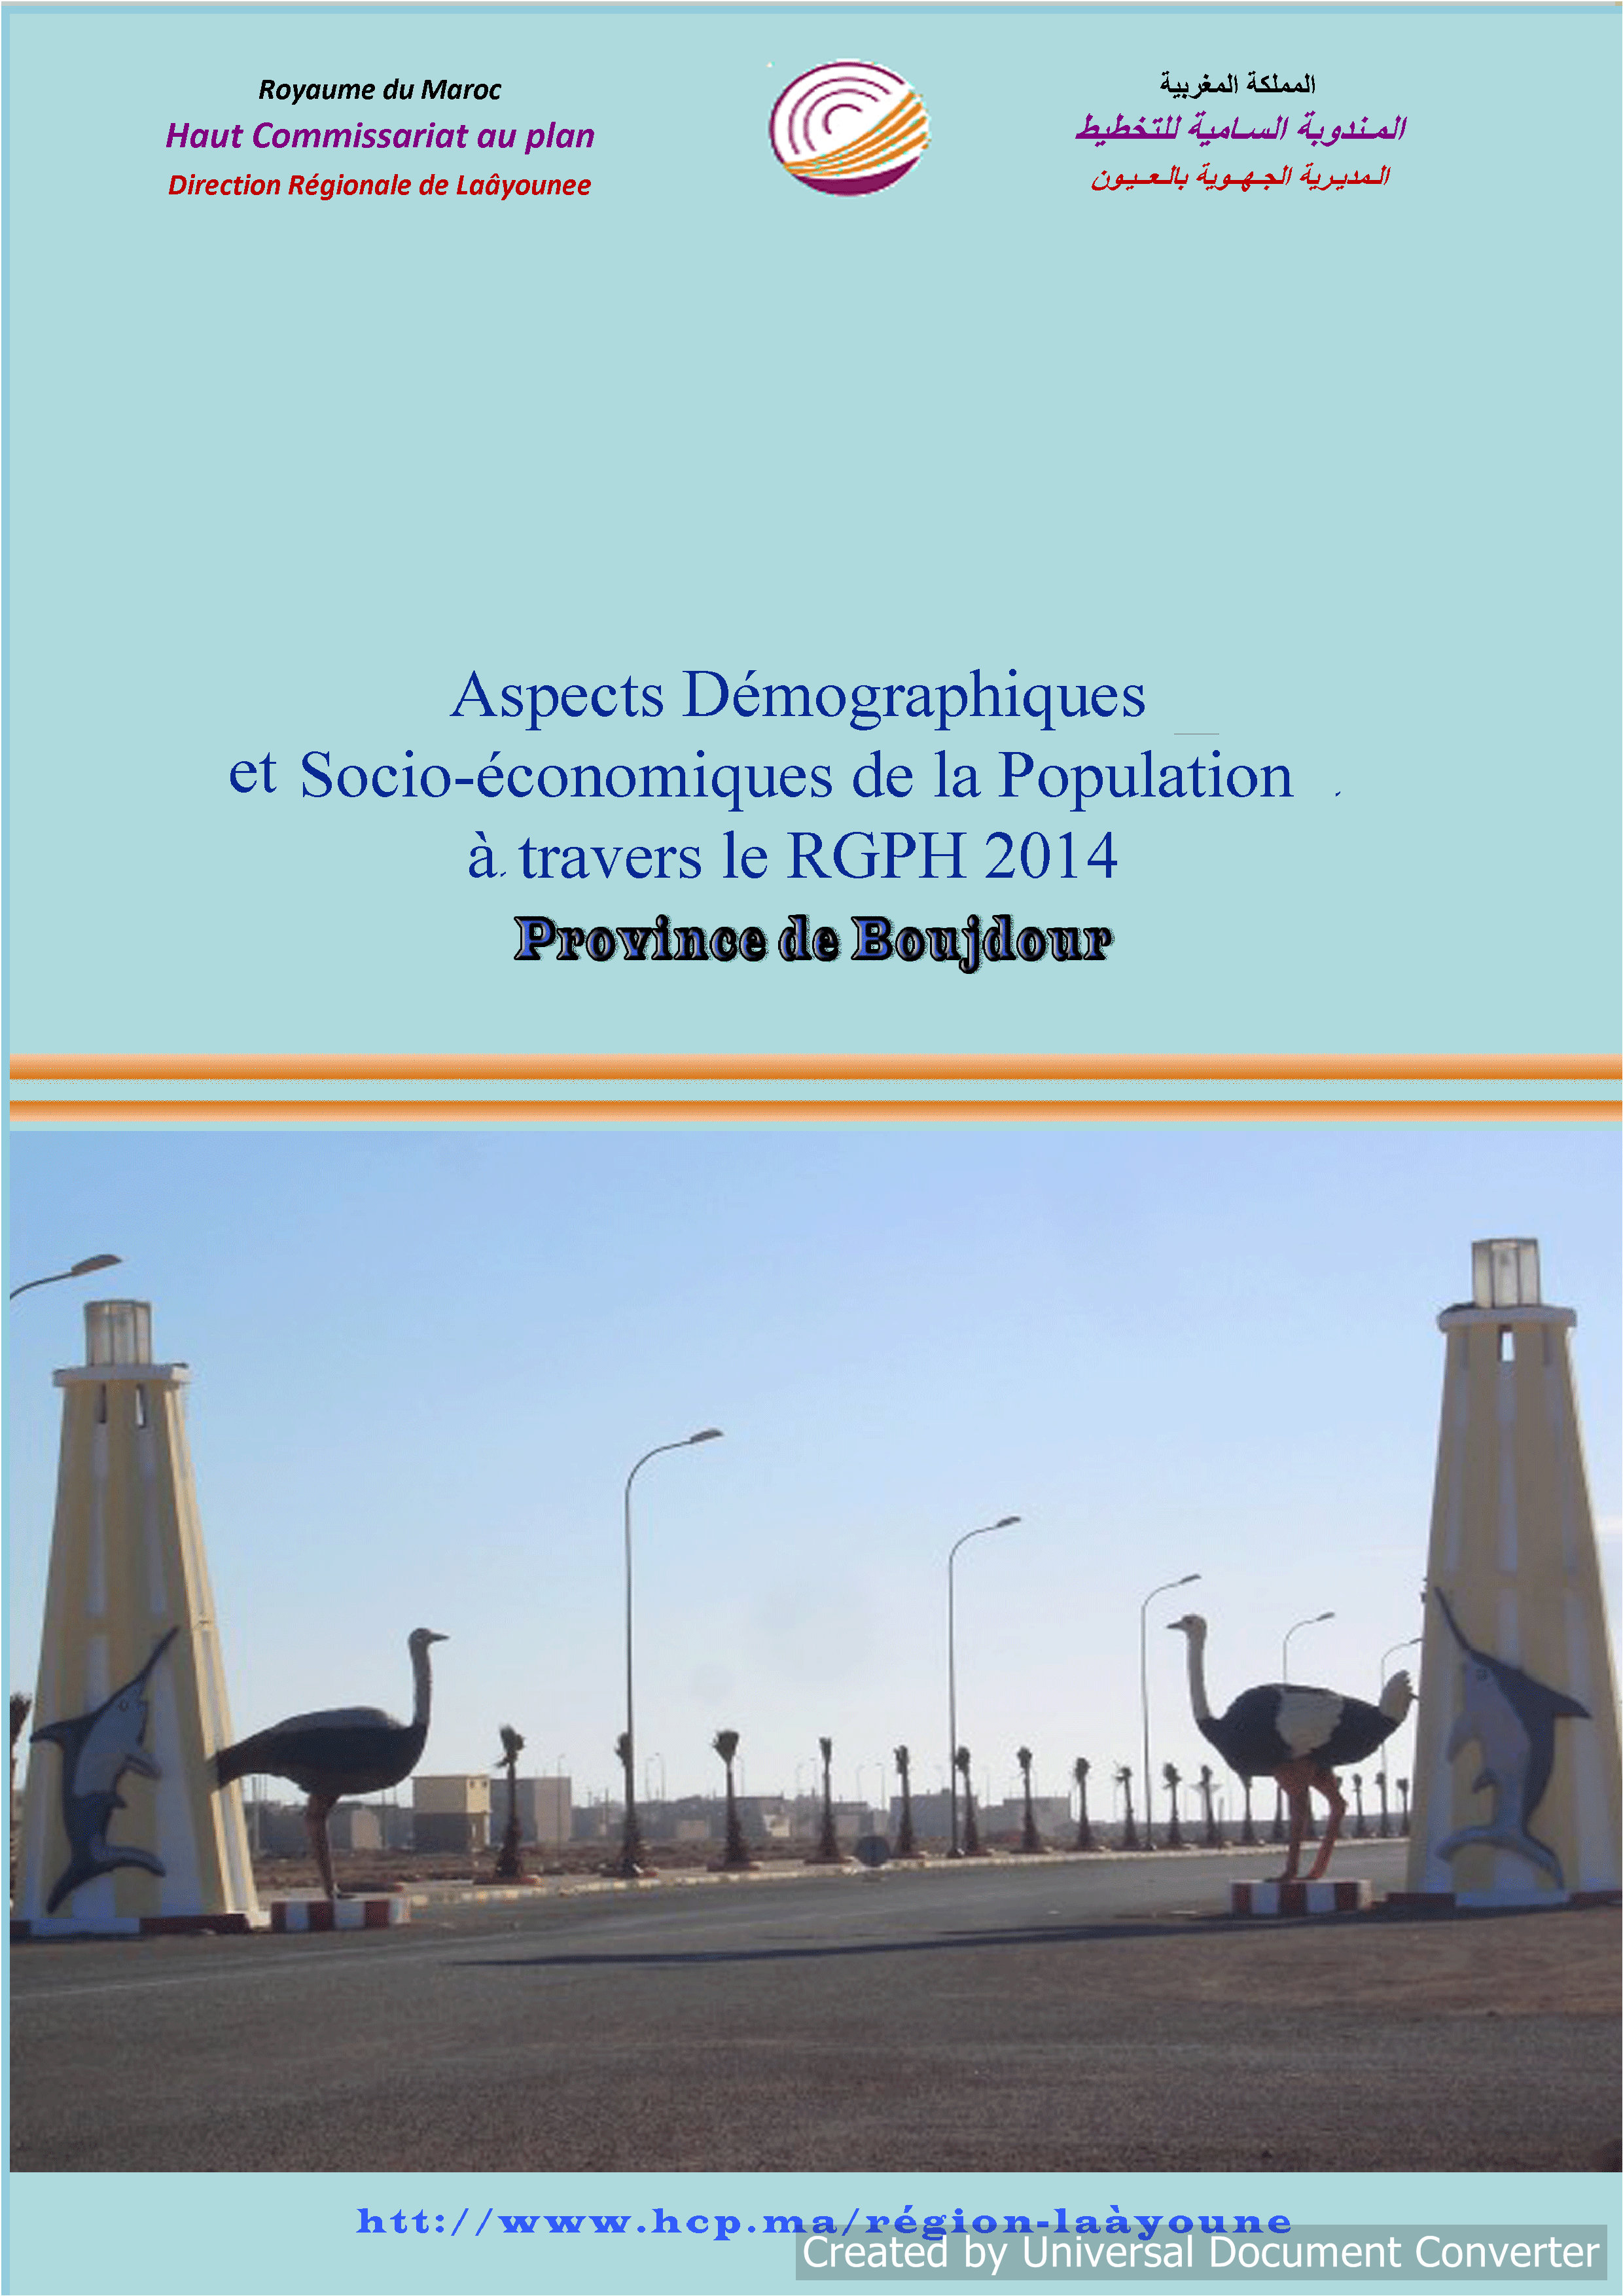 Aspects Démographiques et Socio-économiques de la Population à travers le RGPH 2014 Province de Boujdour.